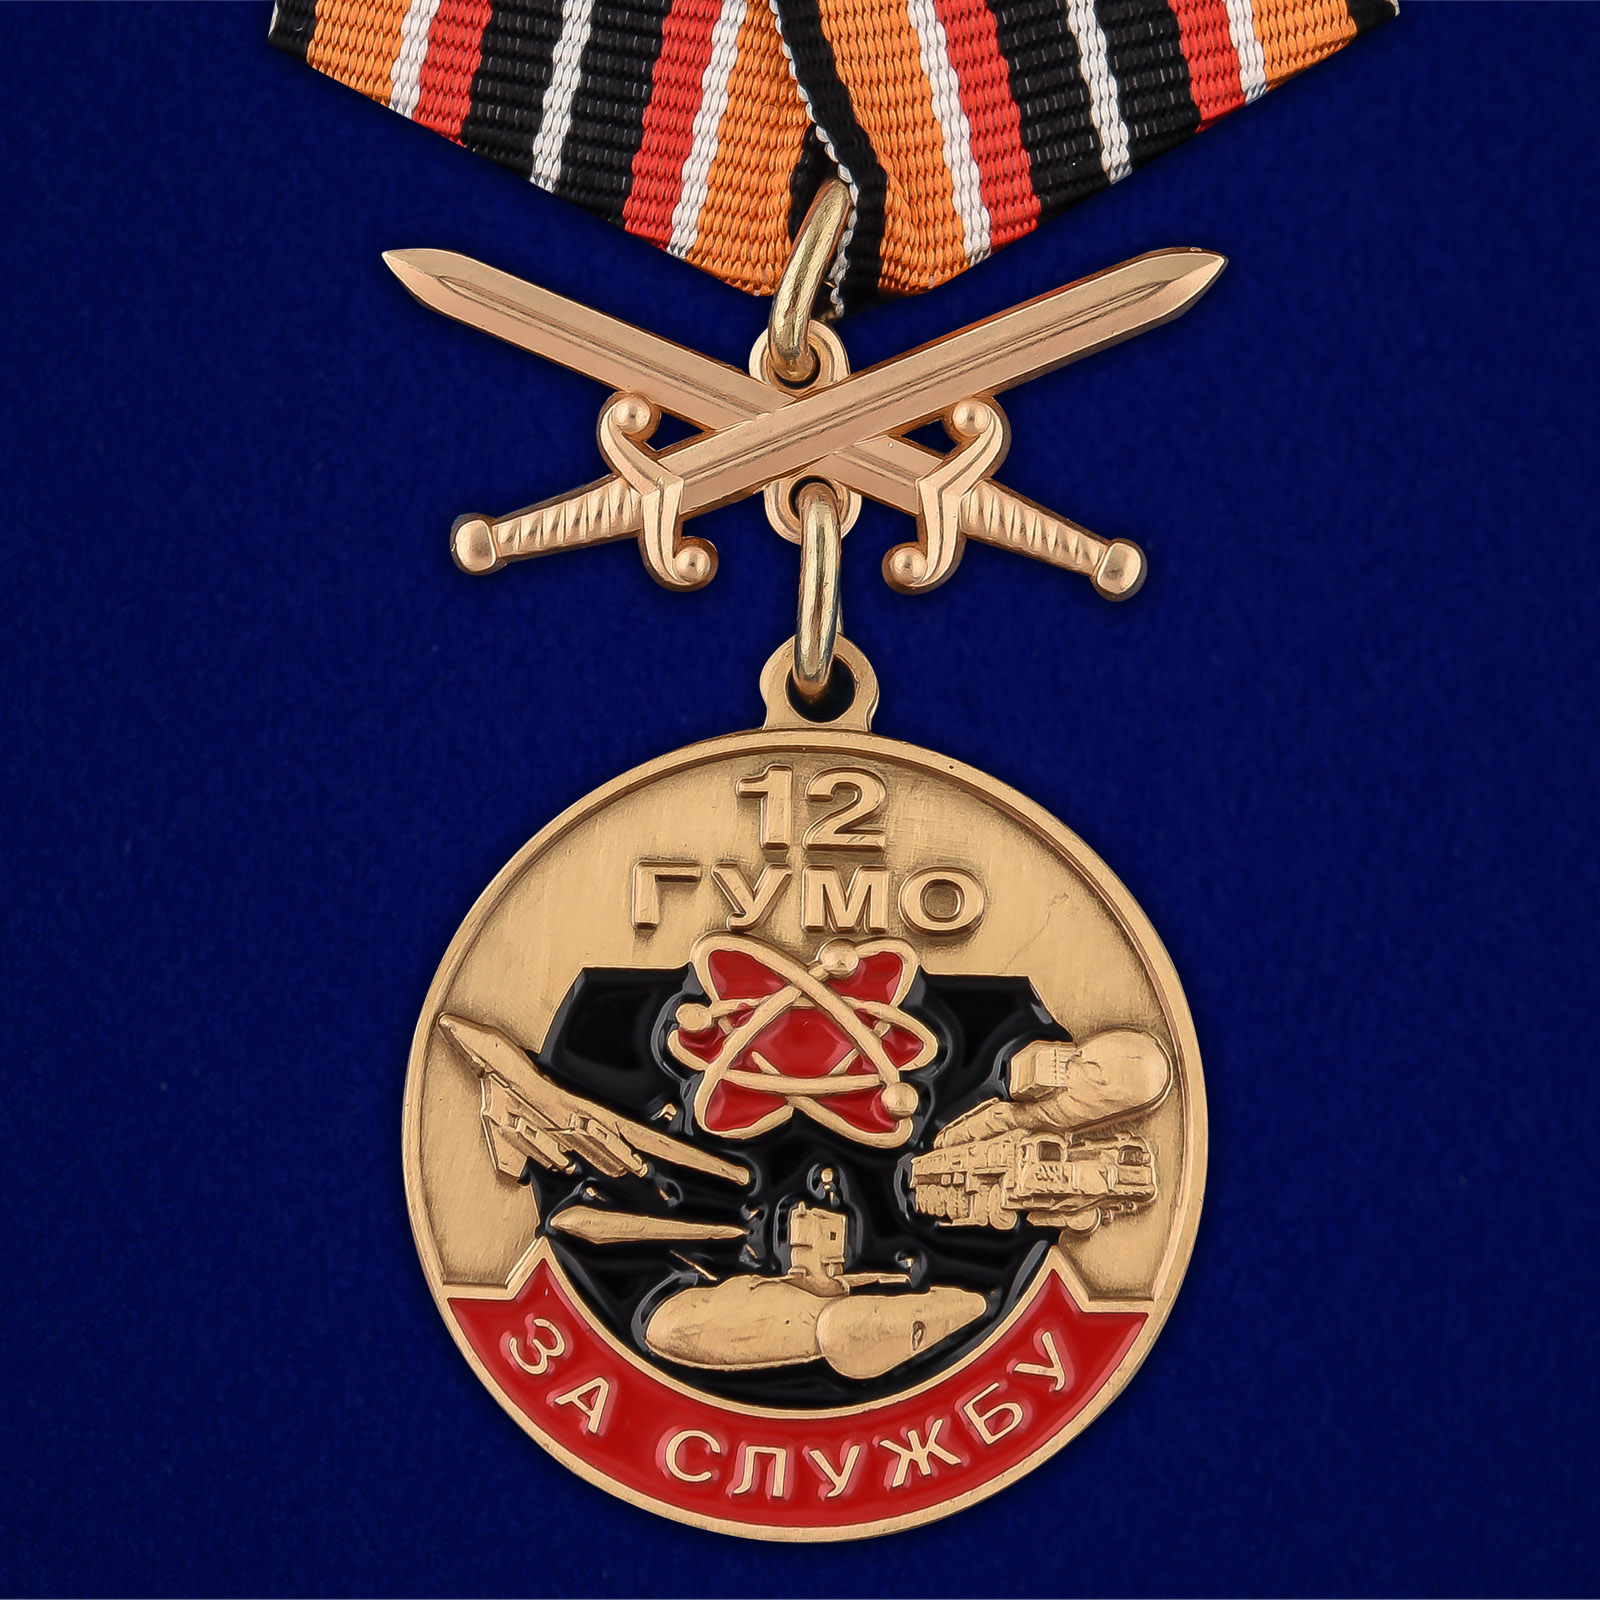 Купить медаль За службу в 12 ГУМО онлайн выгодно